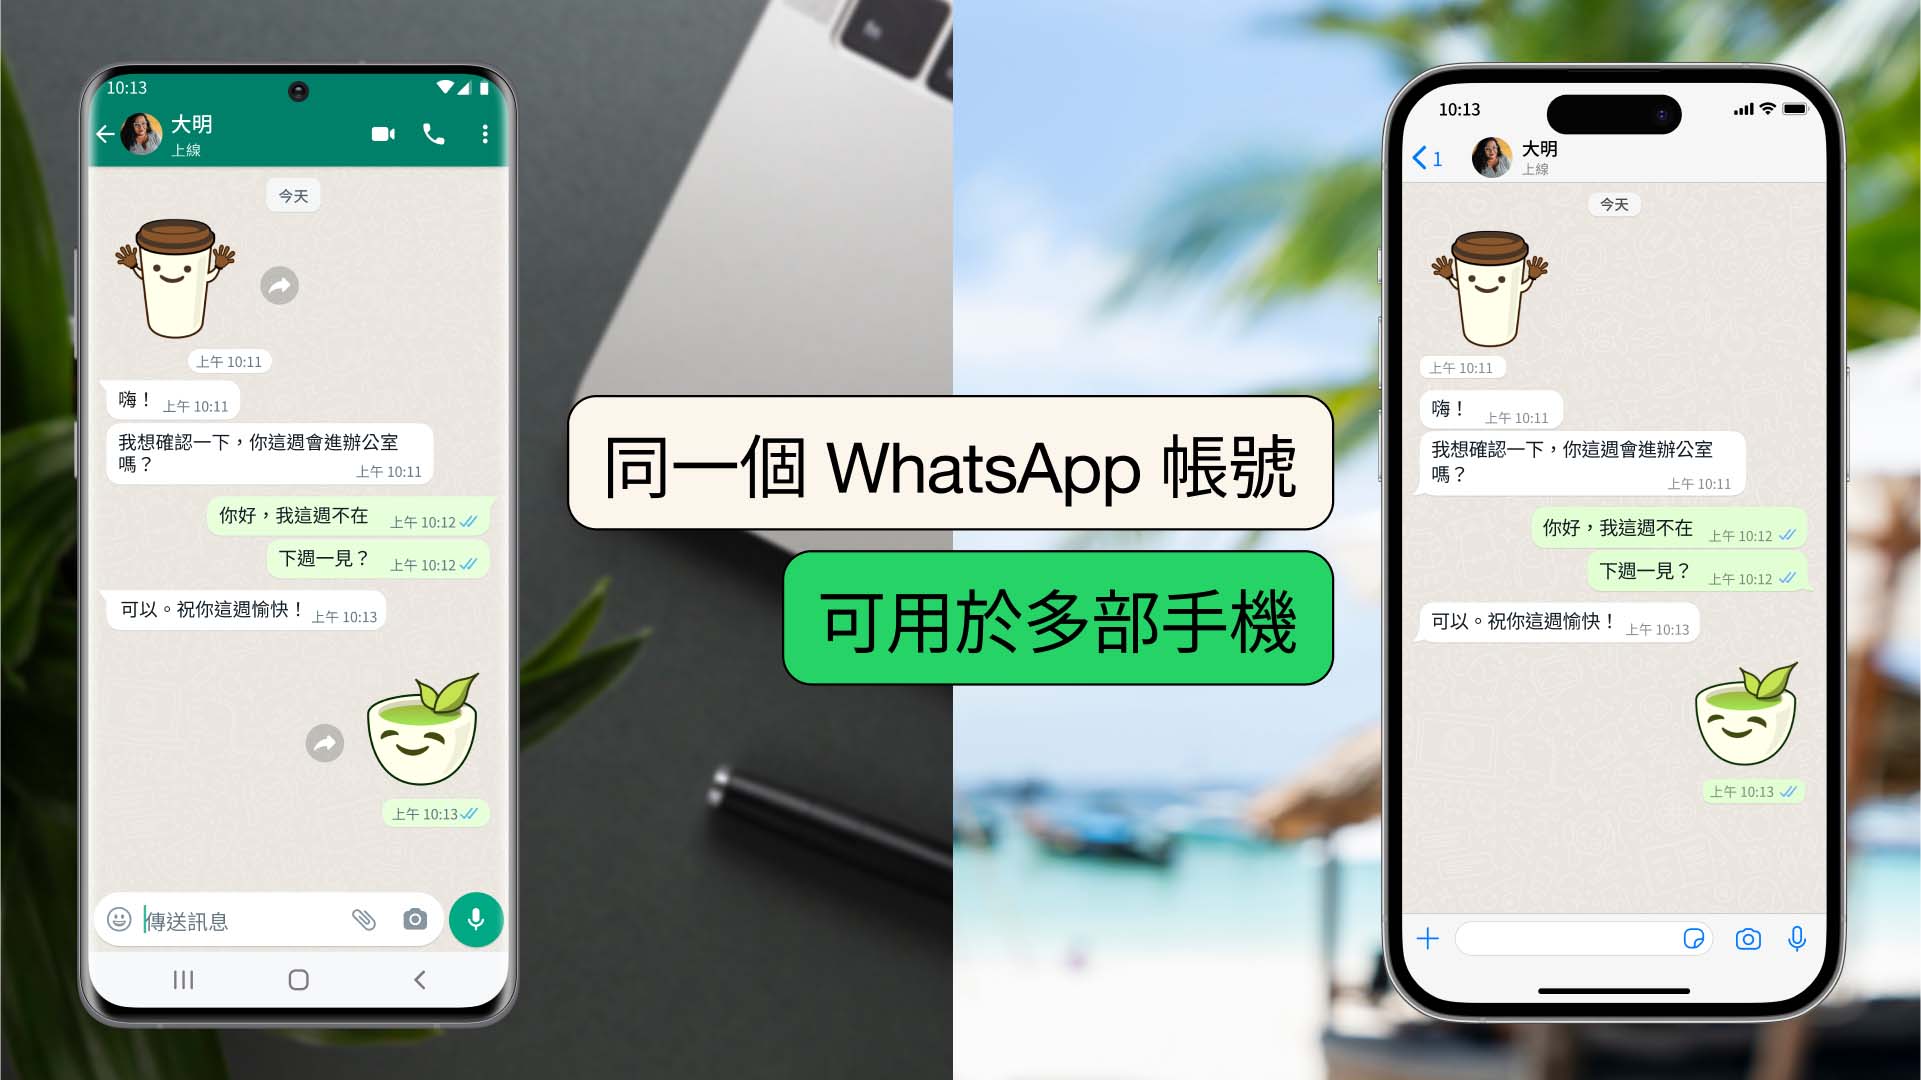 【多機人士佳音】WhatsApp正式支援跨手機共用帳戶